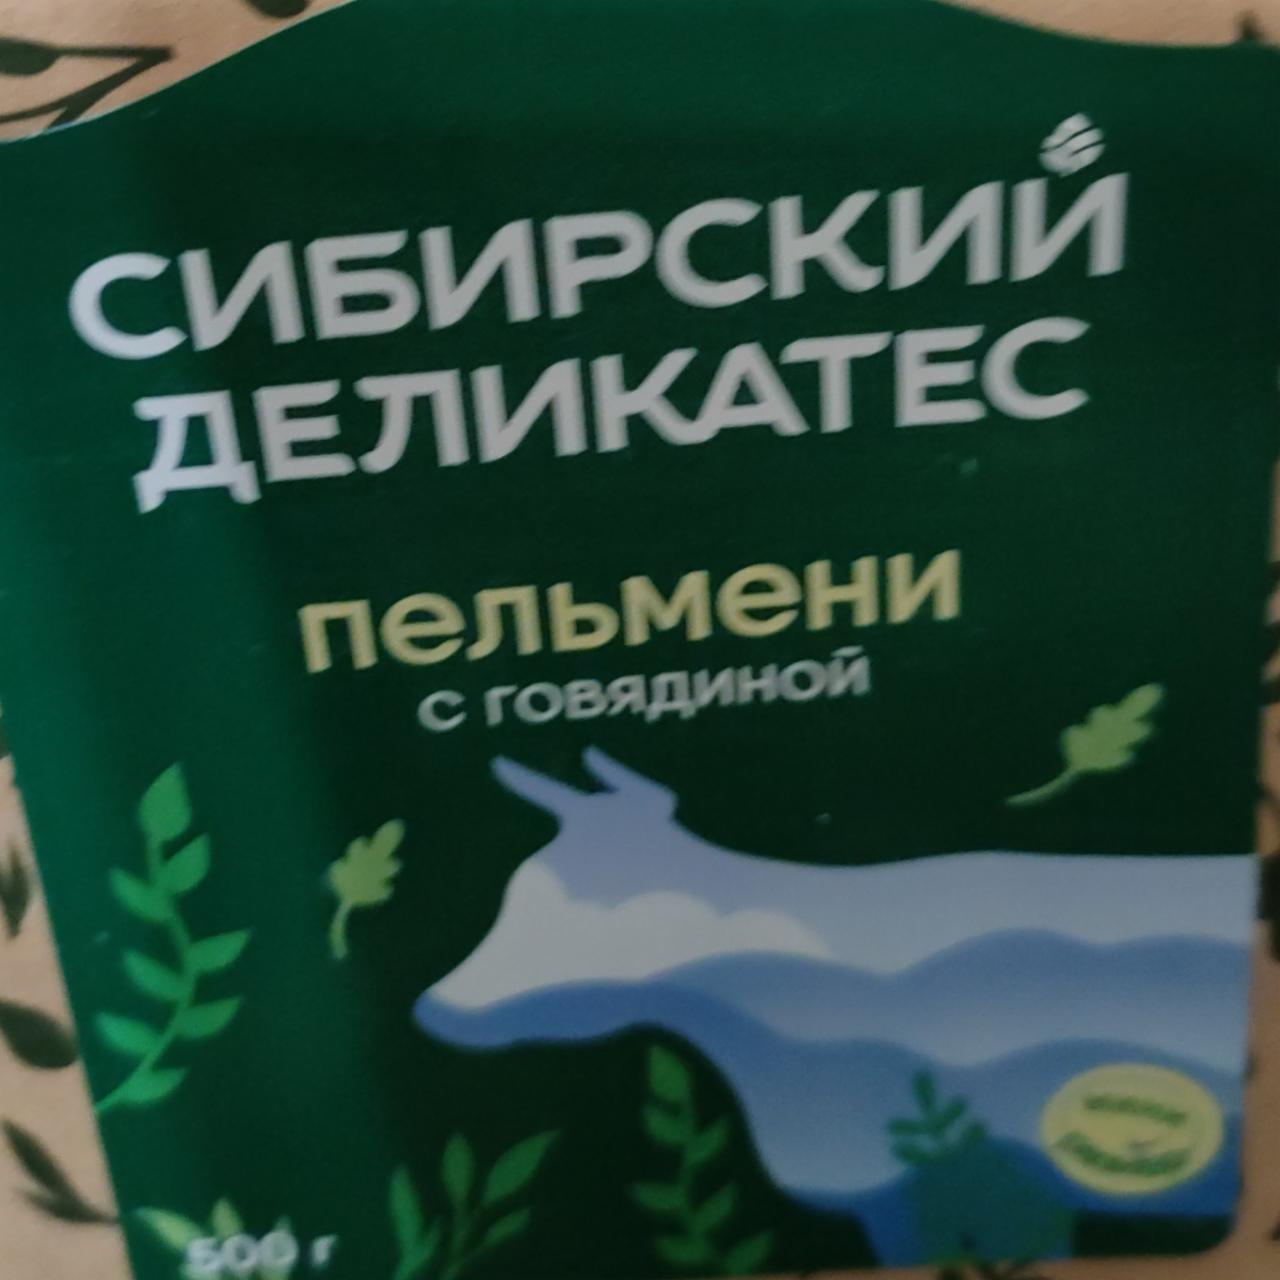 Фото - Пельмени с говядиной Сибирский деликатес